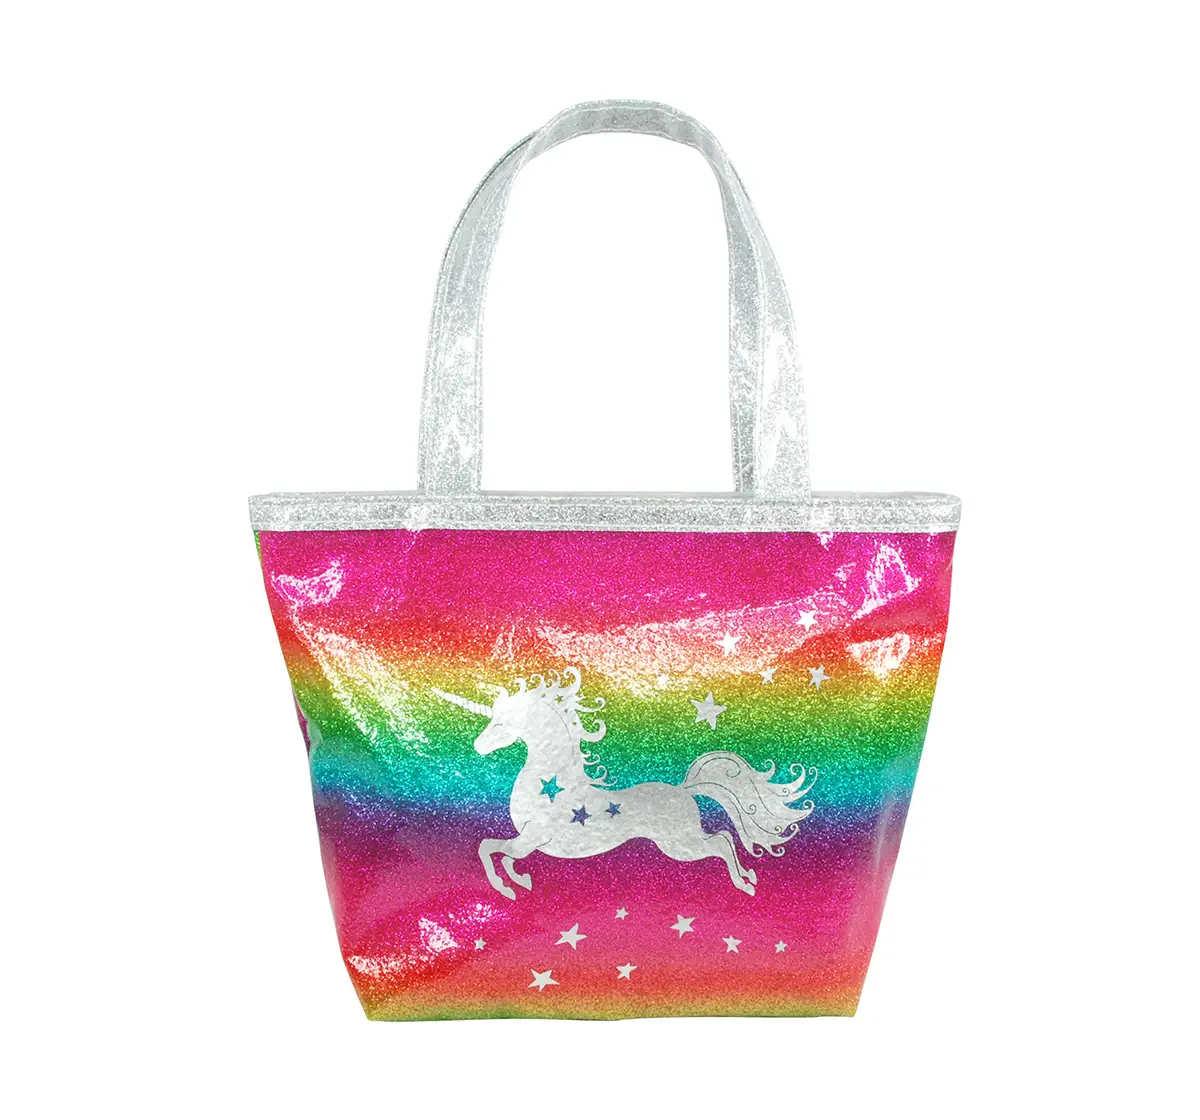 Luvley Rainbow Fantasy Handbag Accessories age 3Y+ 